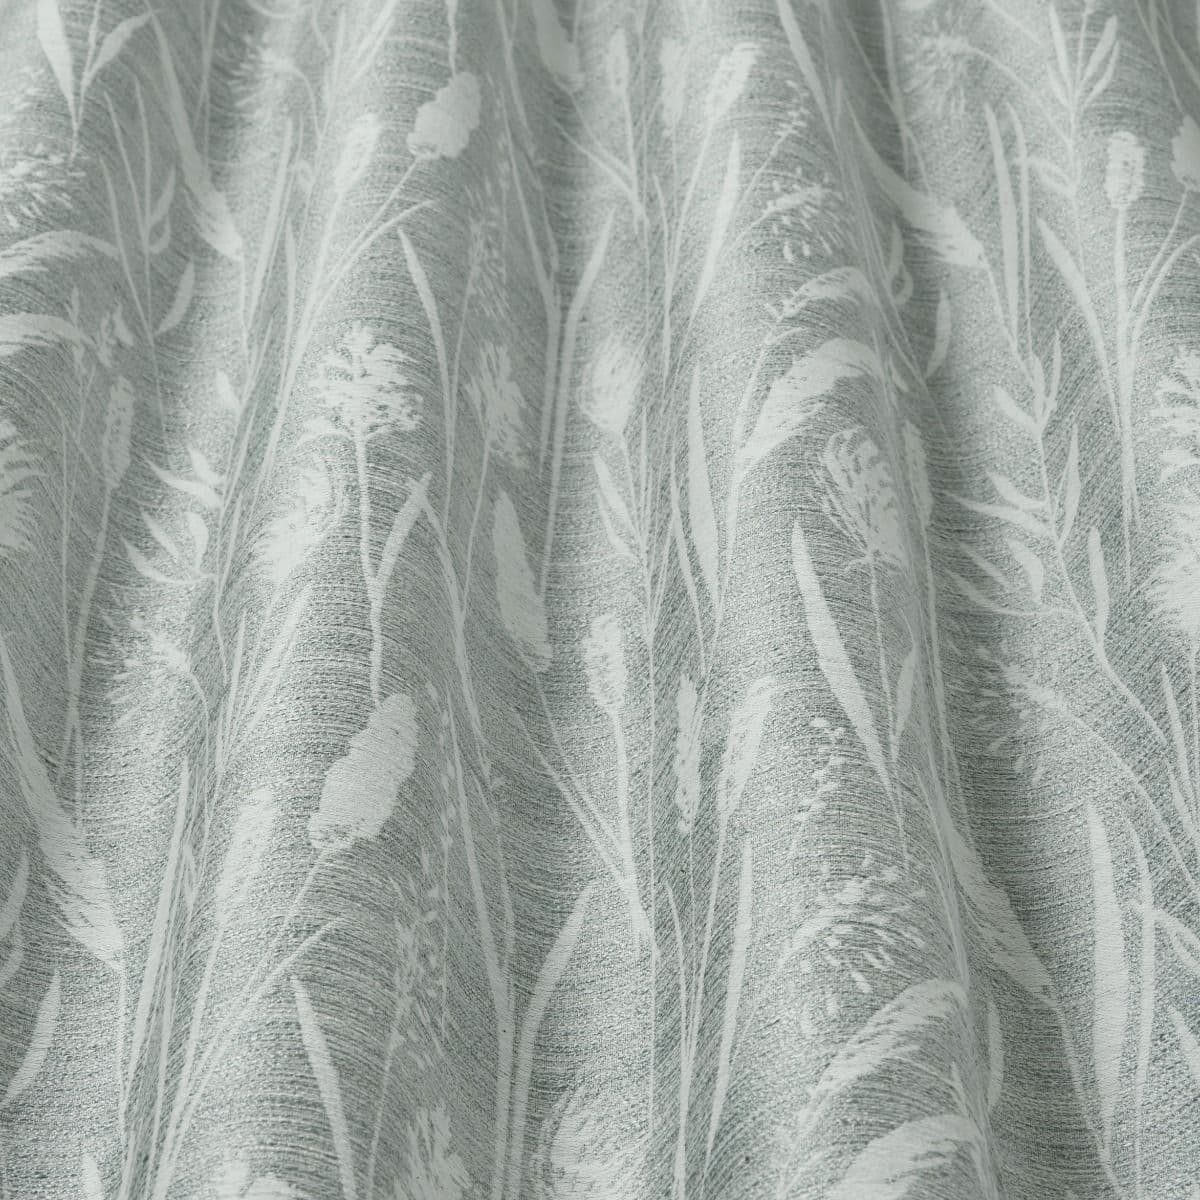 Iliv Sea Grasses Fabric in Cornflower